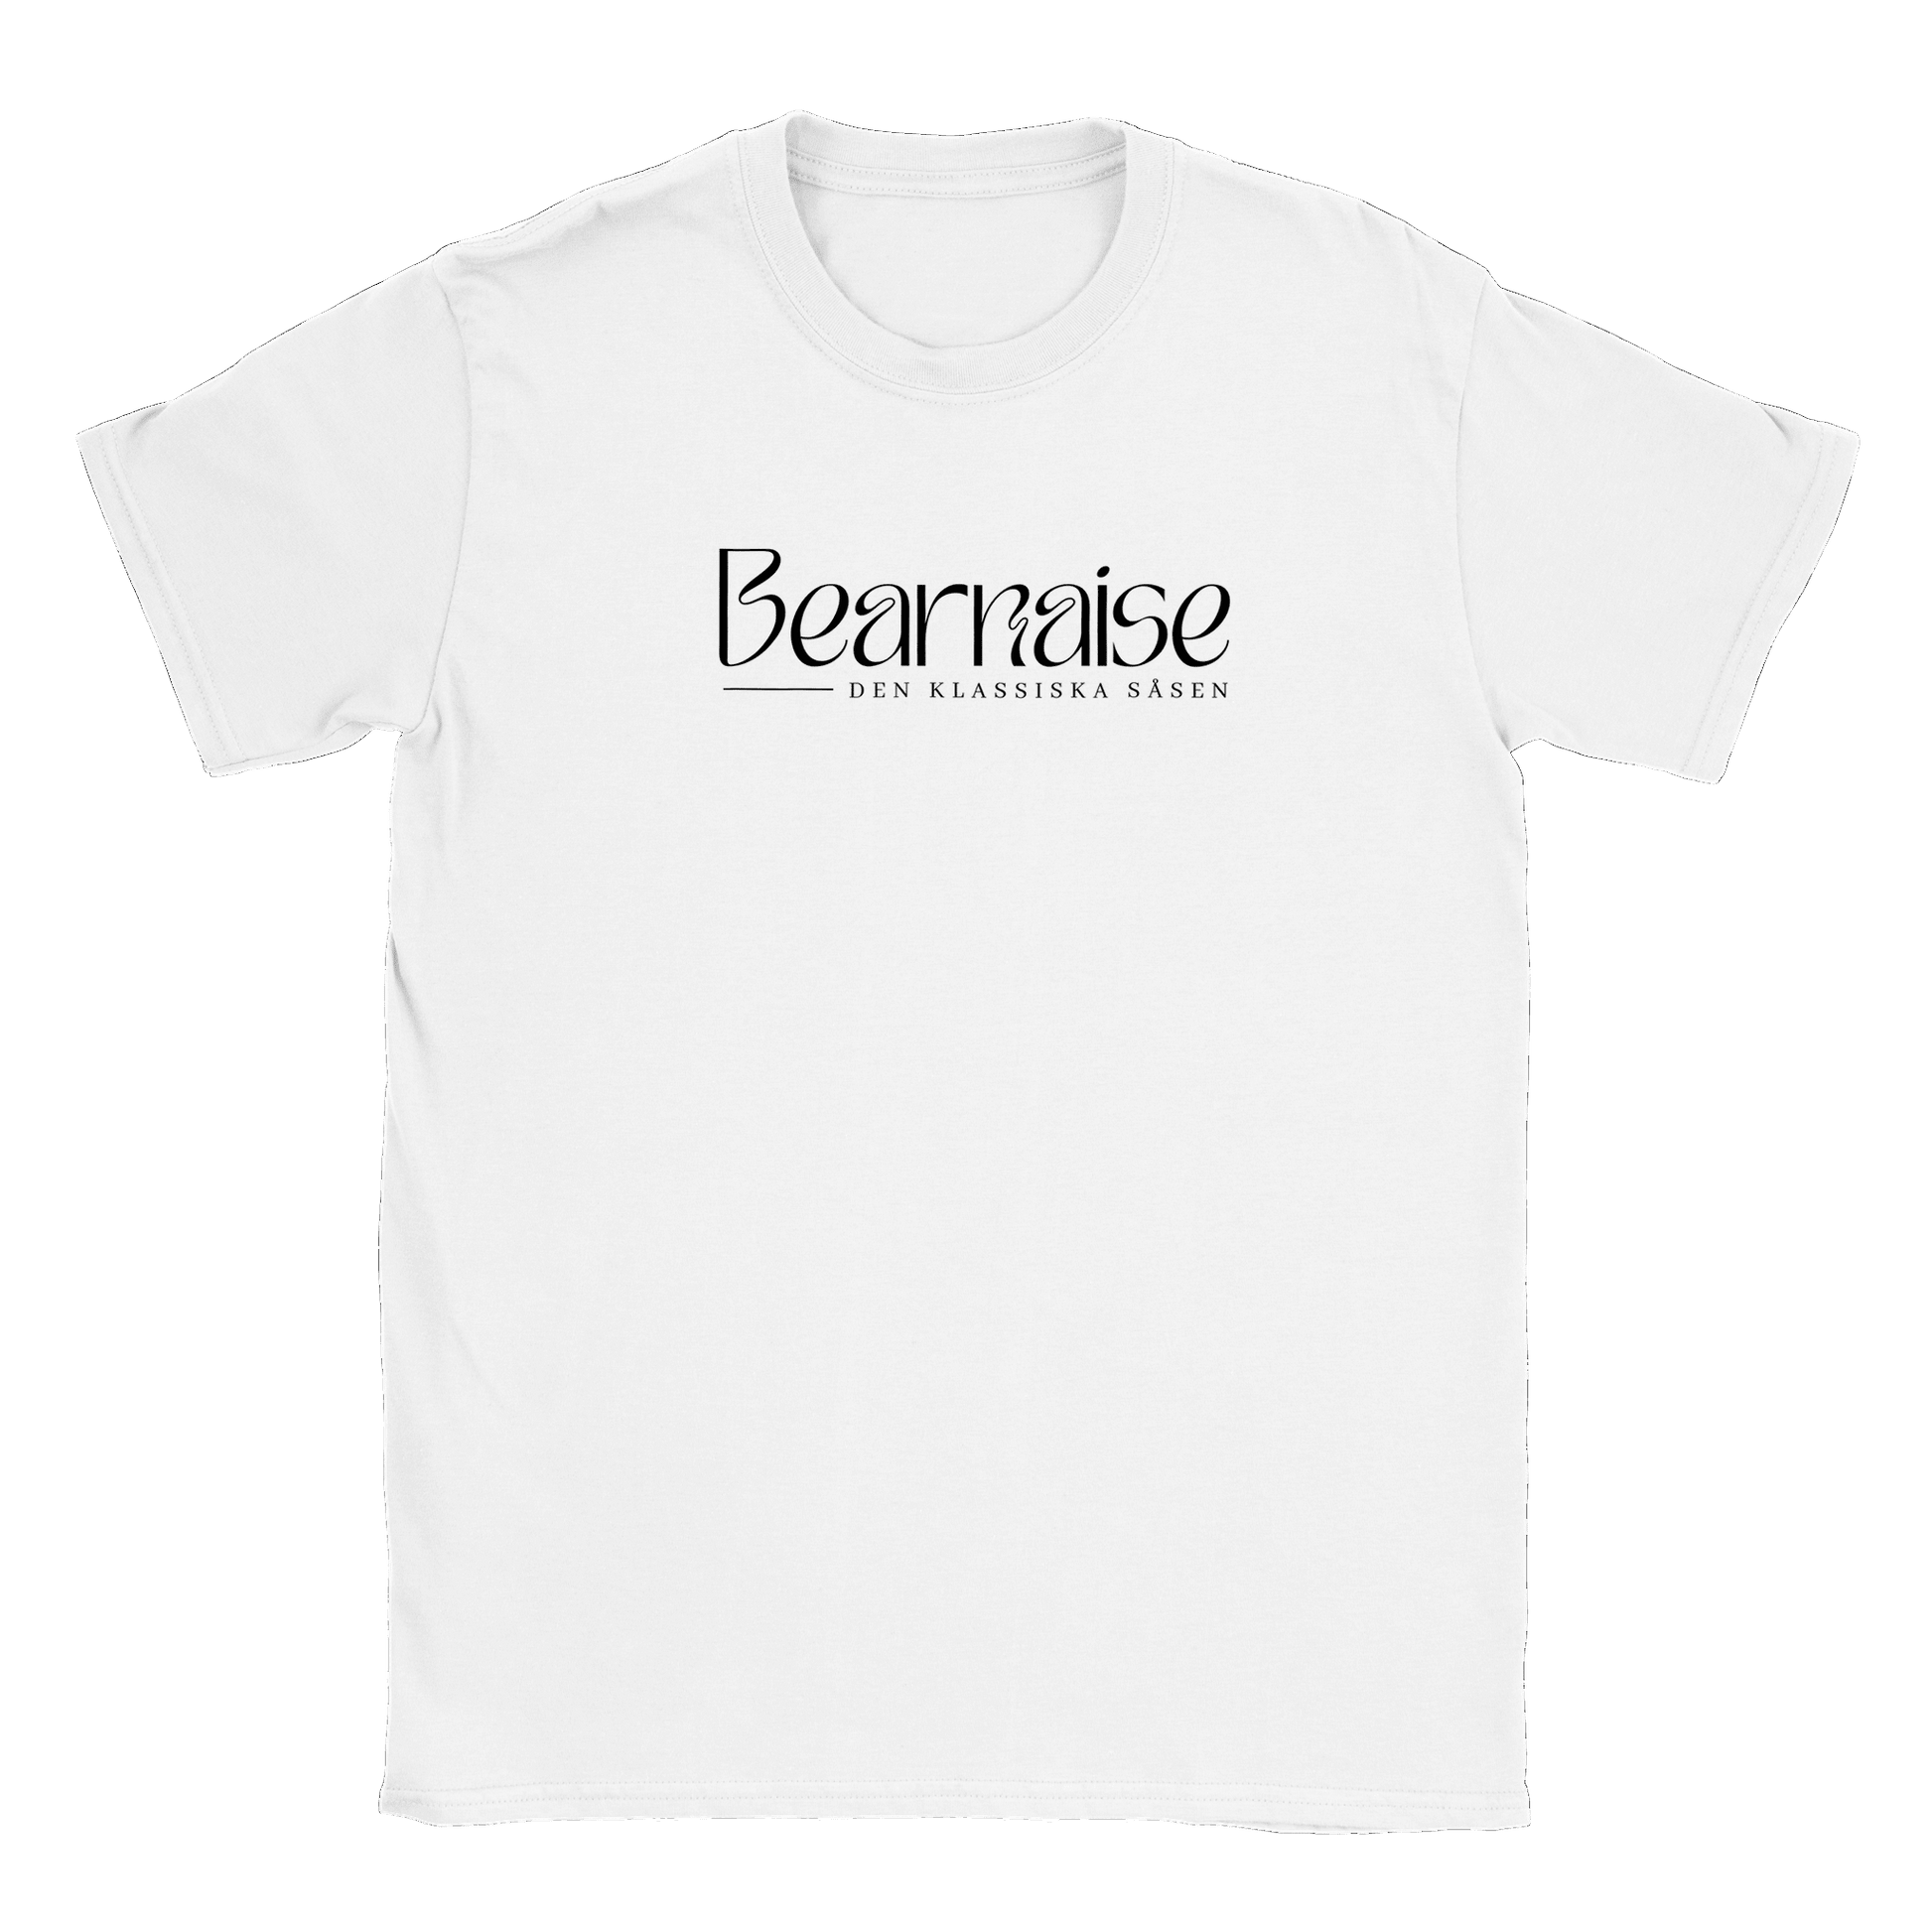 Bearnaisesås - T-shirt Vit